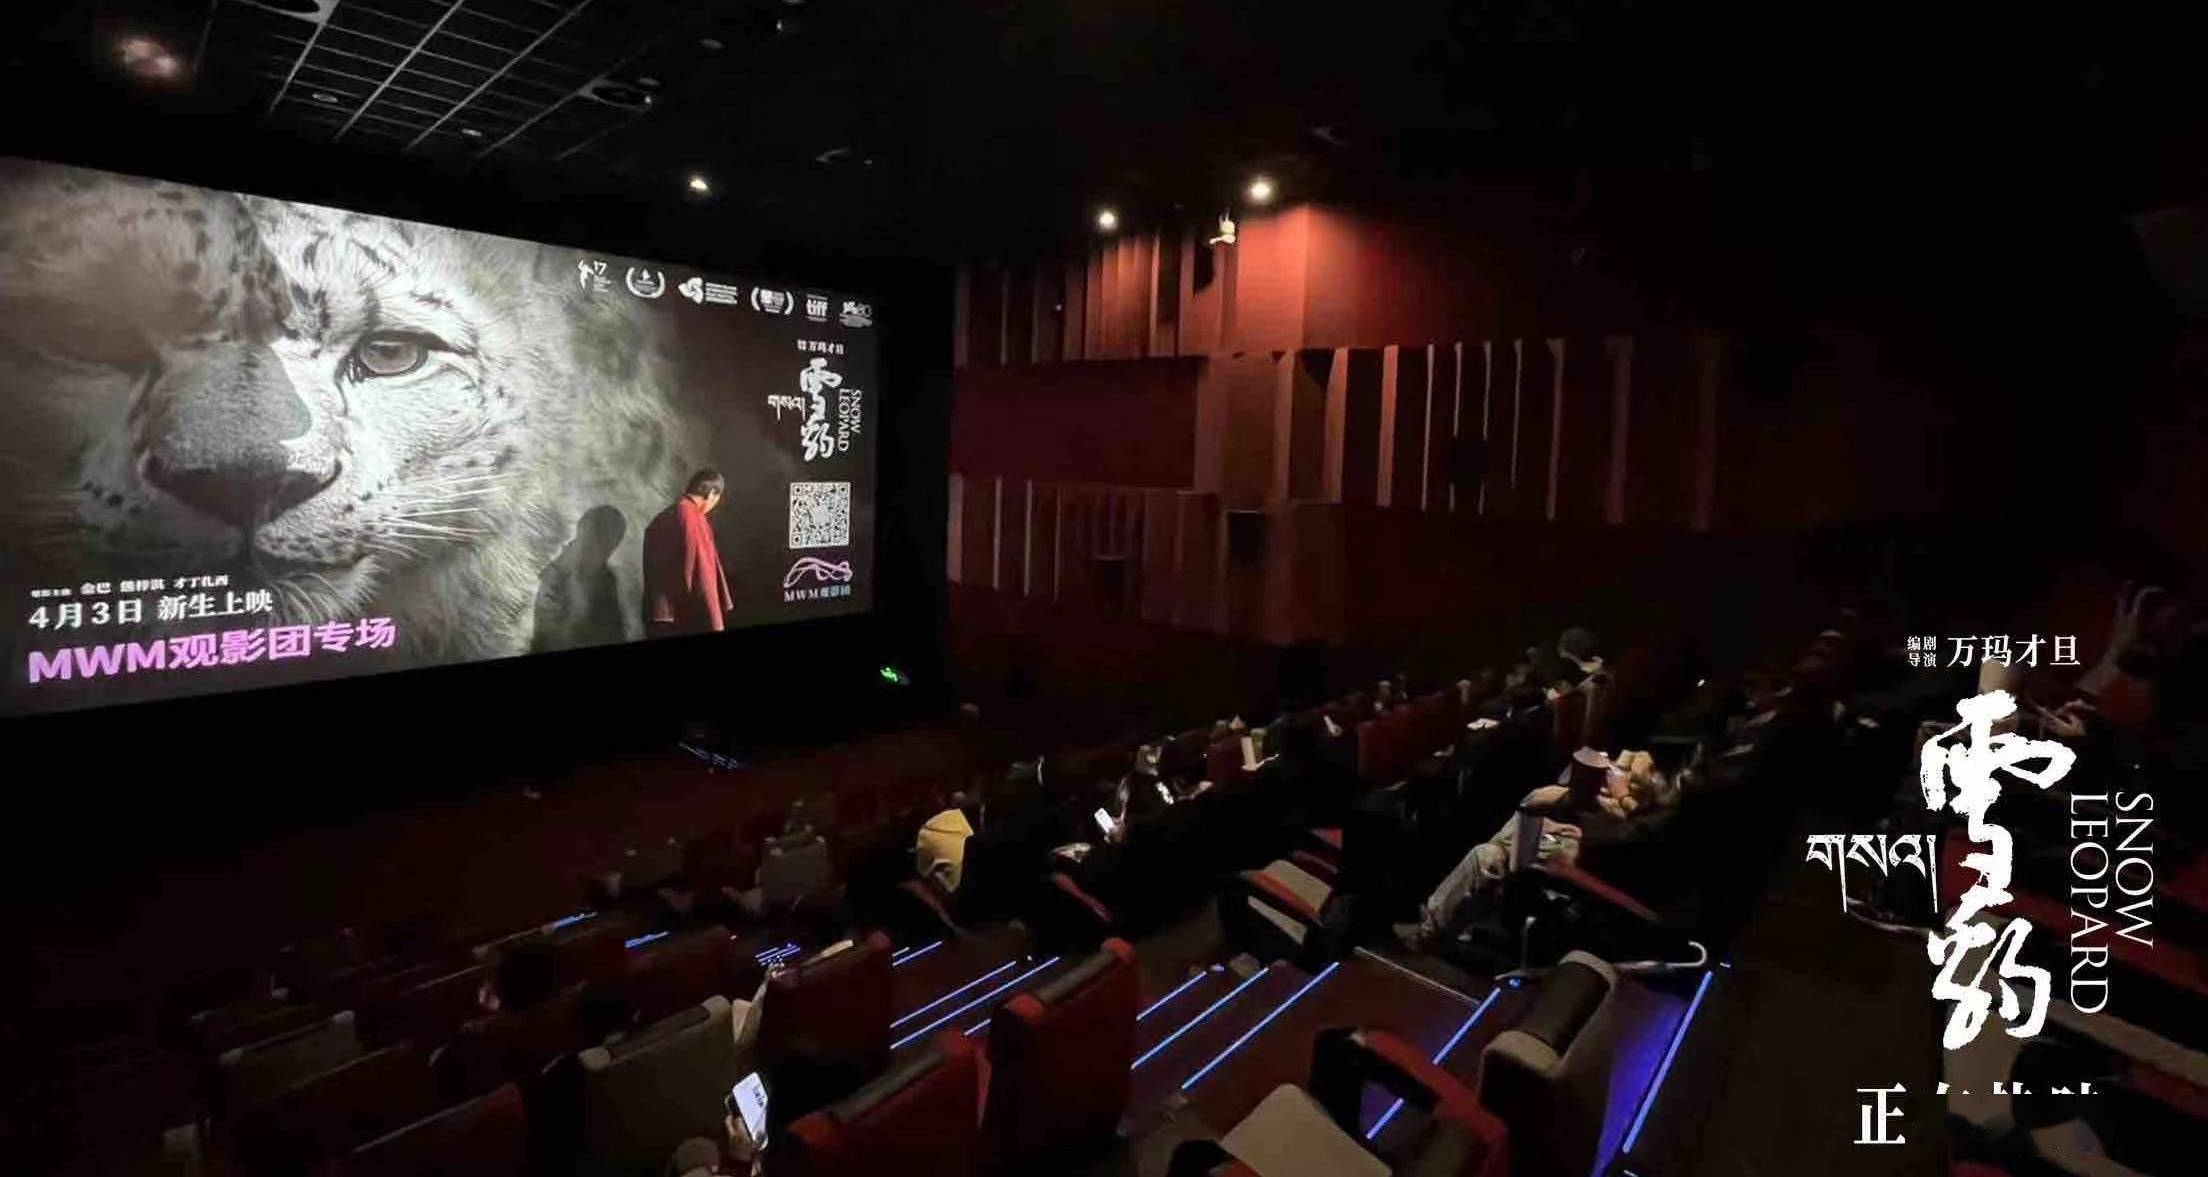 万玛才旦高口碑电影《雪豹》路演 影片价值表达获观众盛赞 